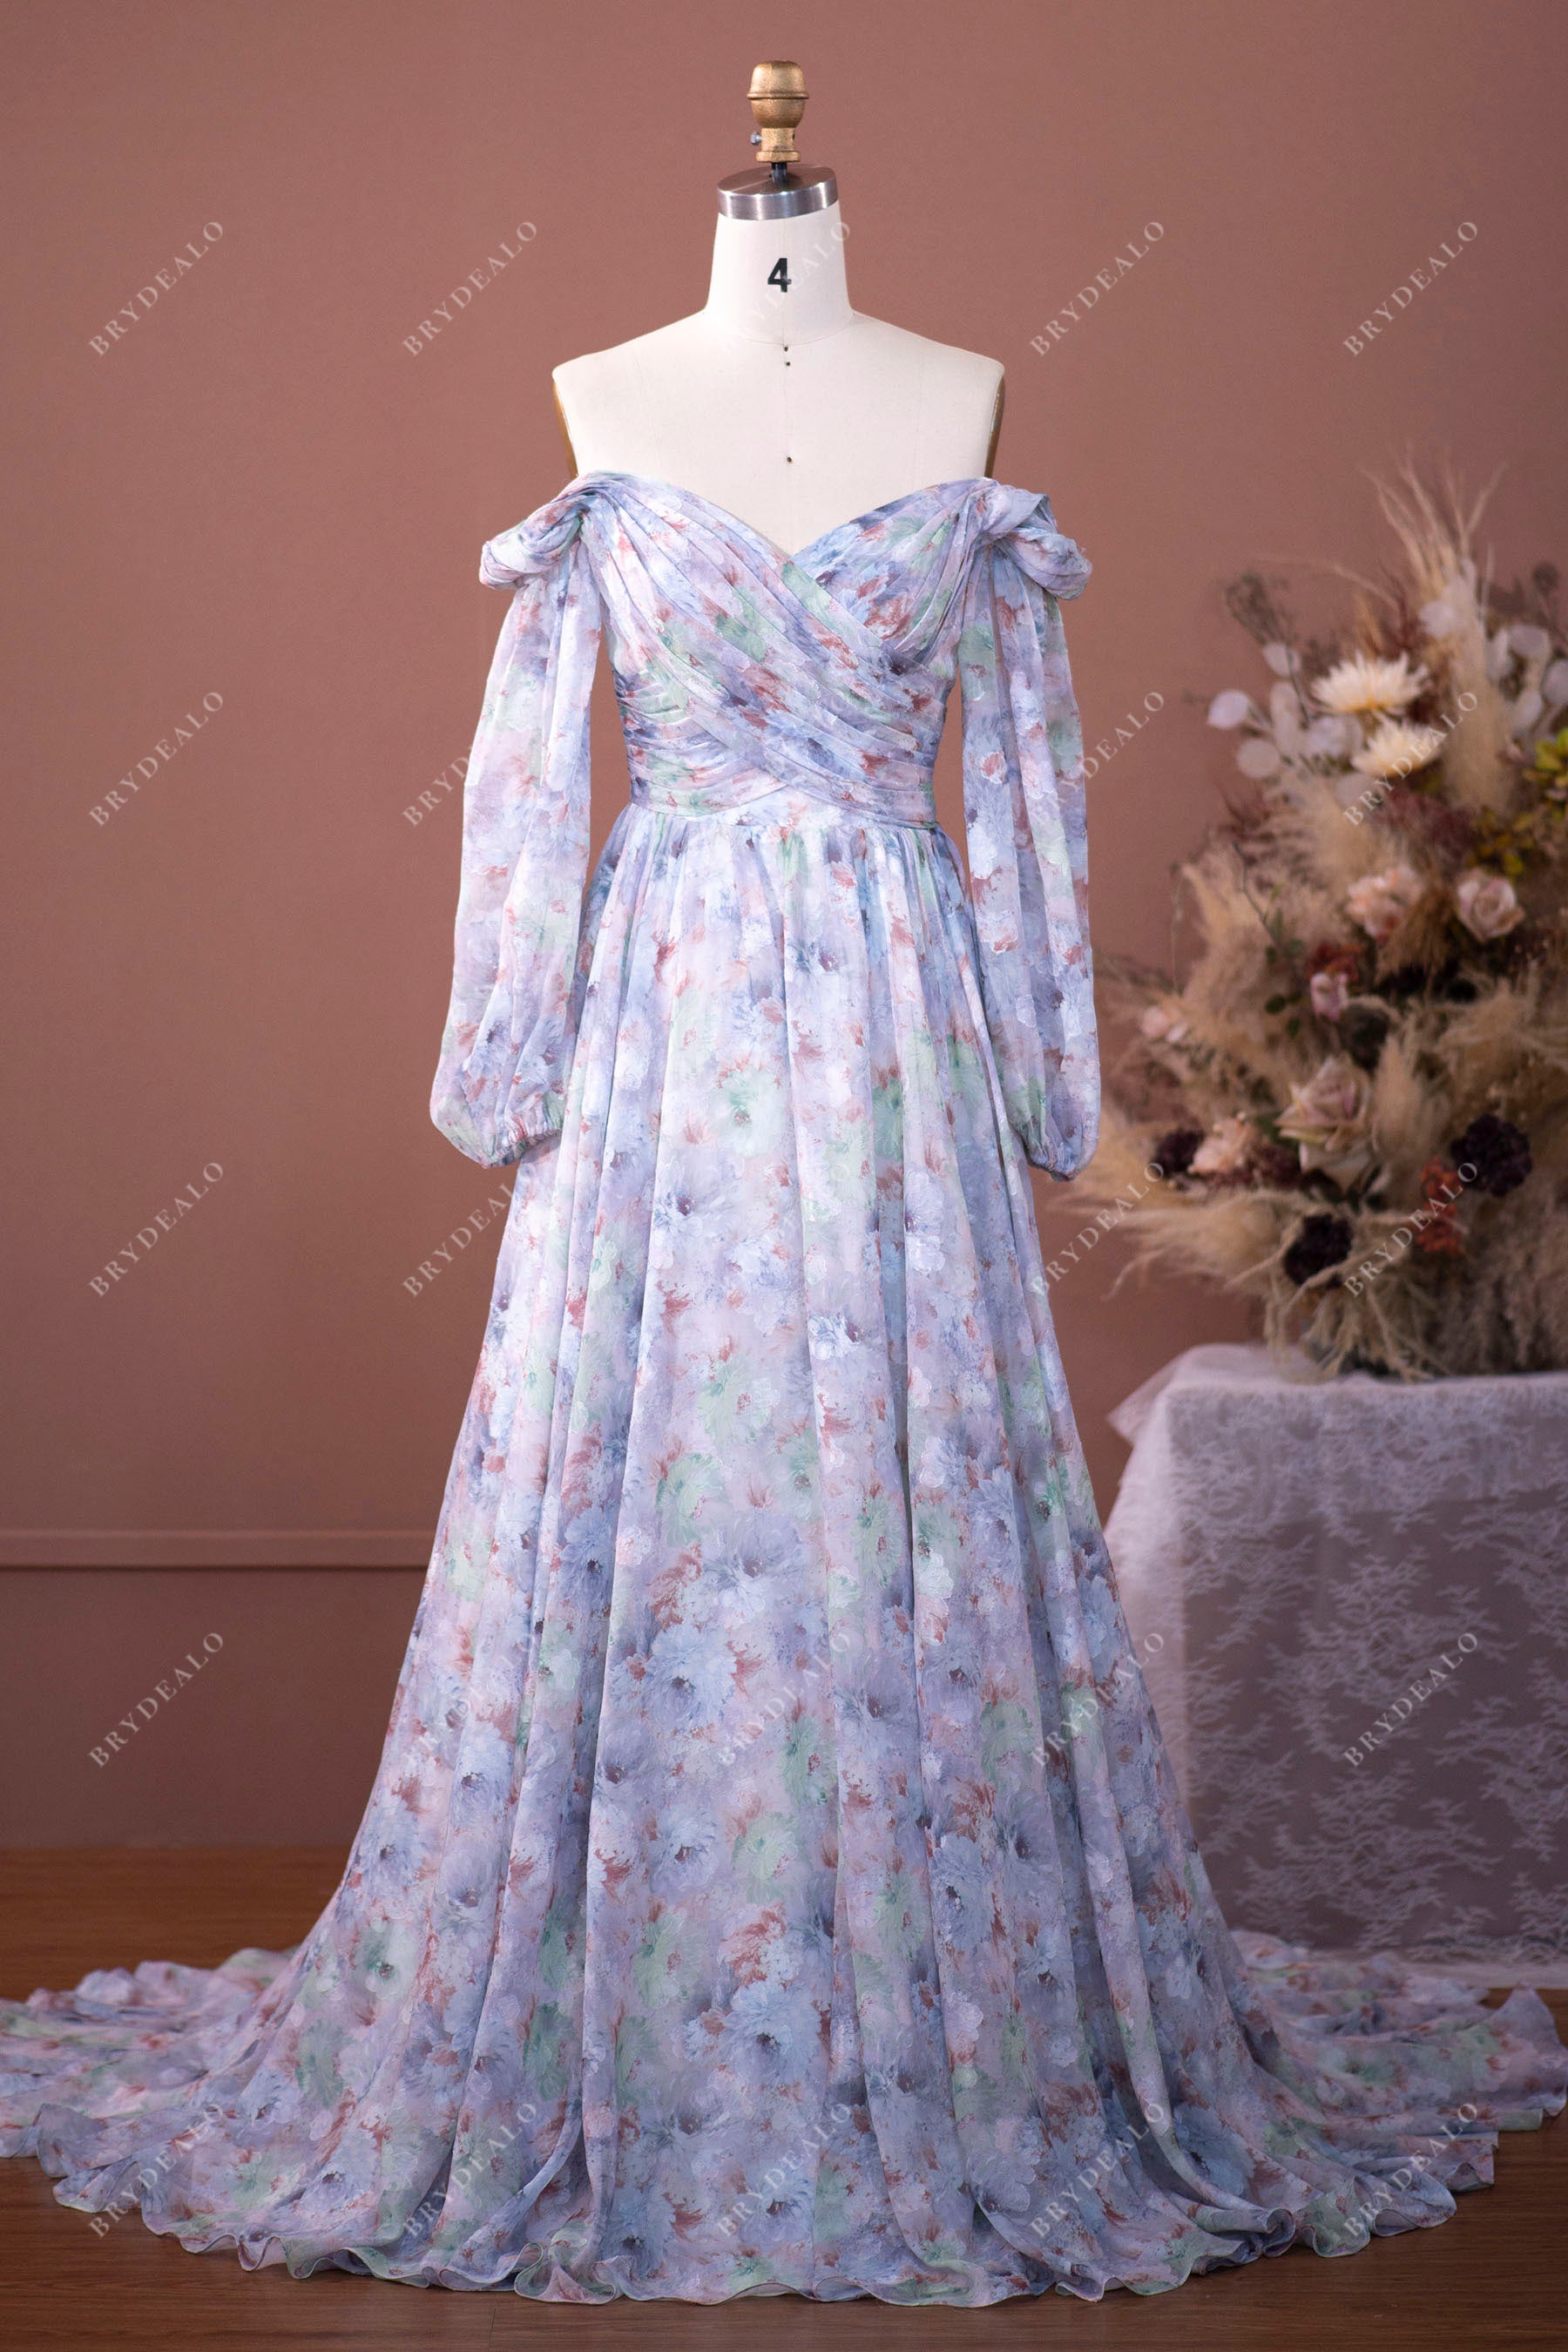 Floral Chiffon Off Shoulder Sleeved Wedding Dress